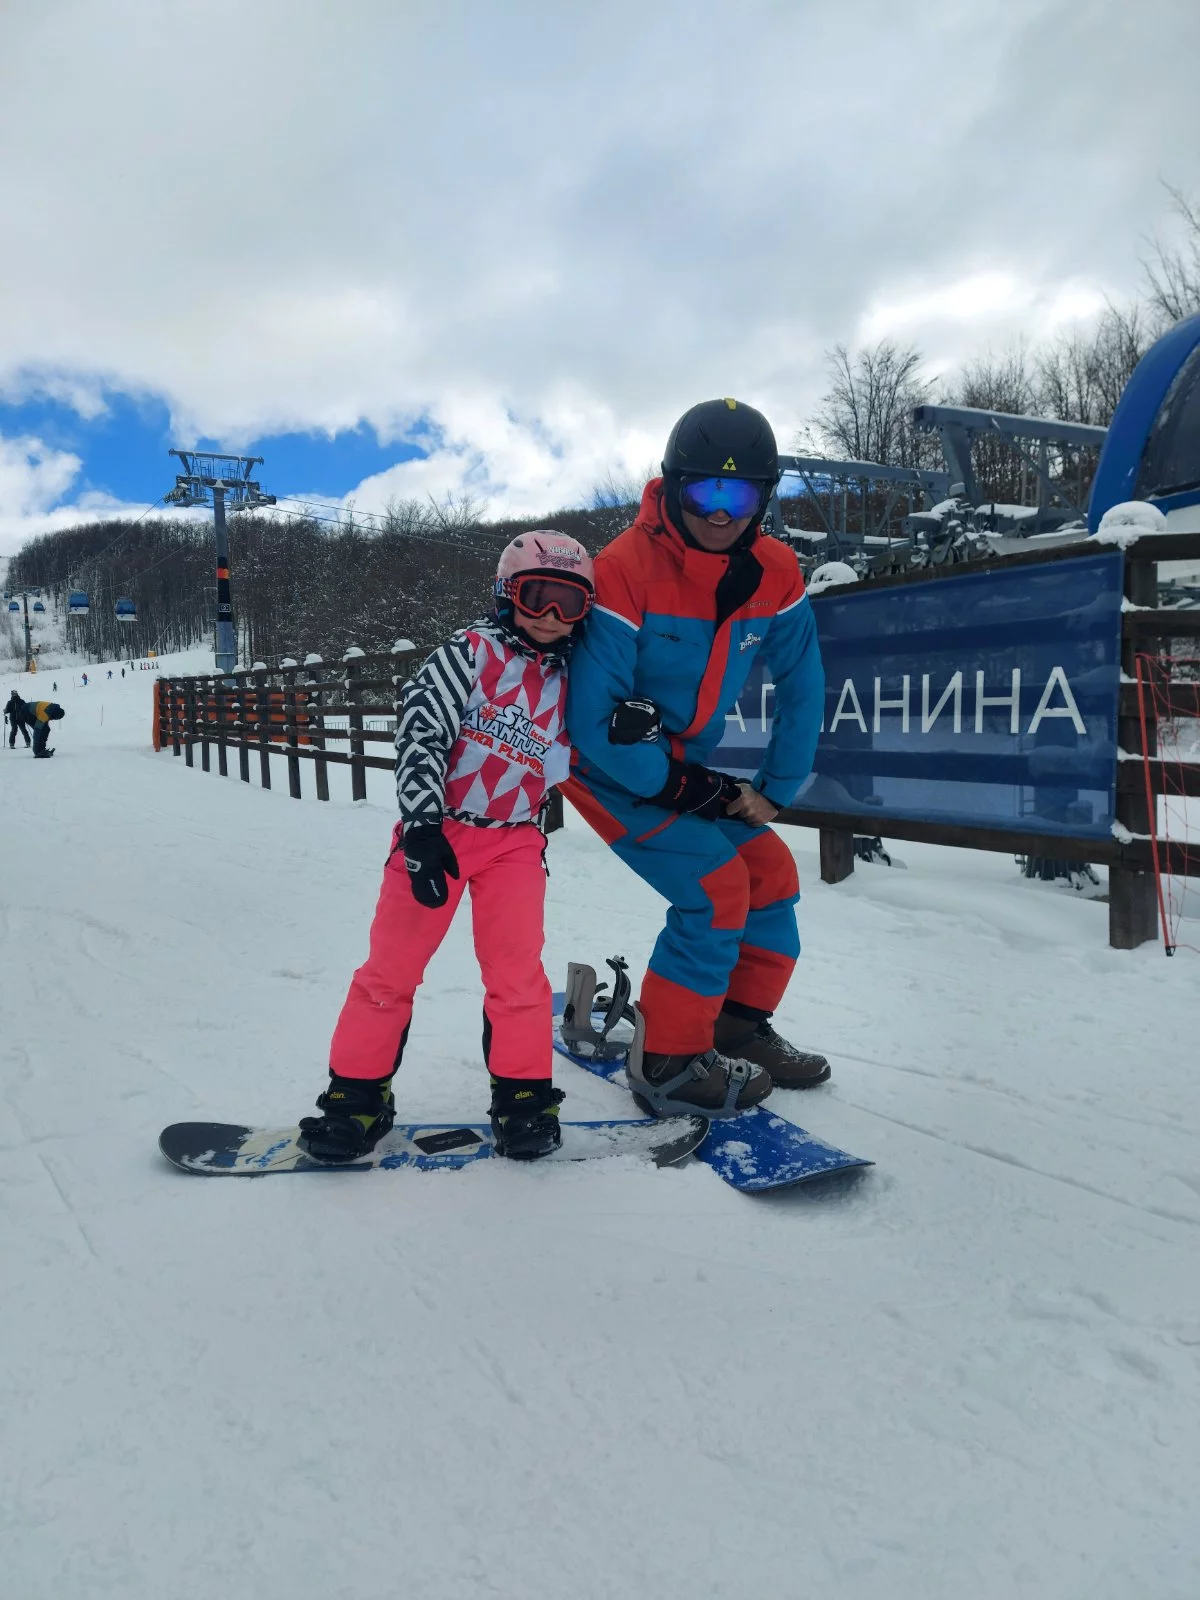 Kids in ski gear